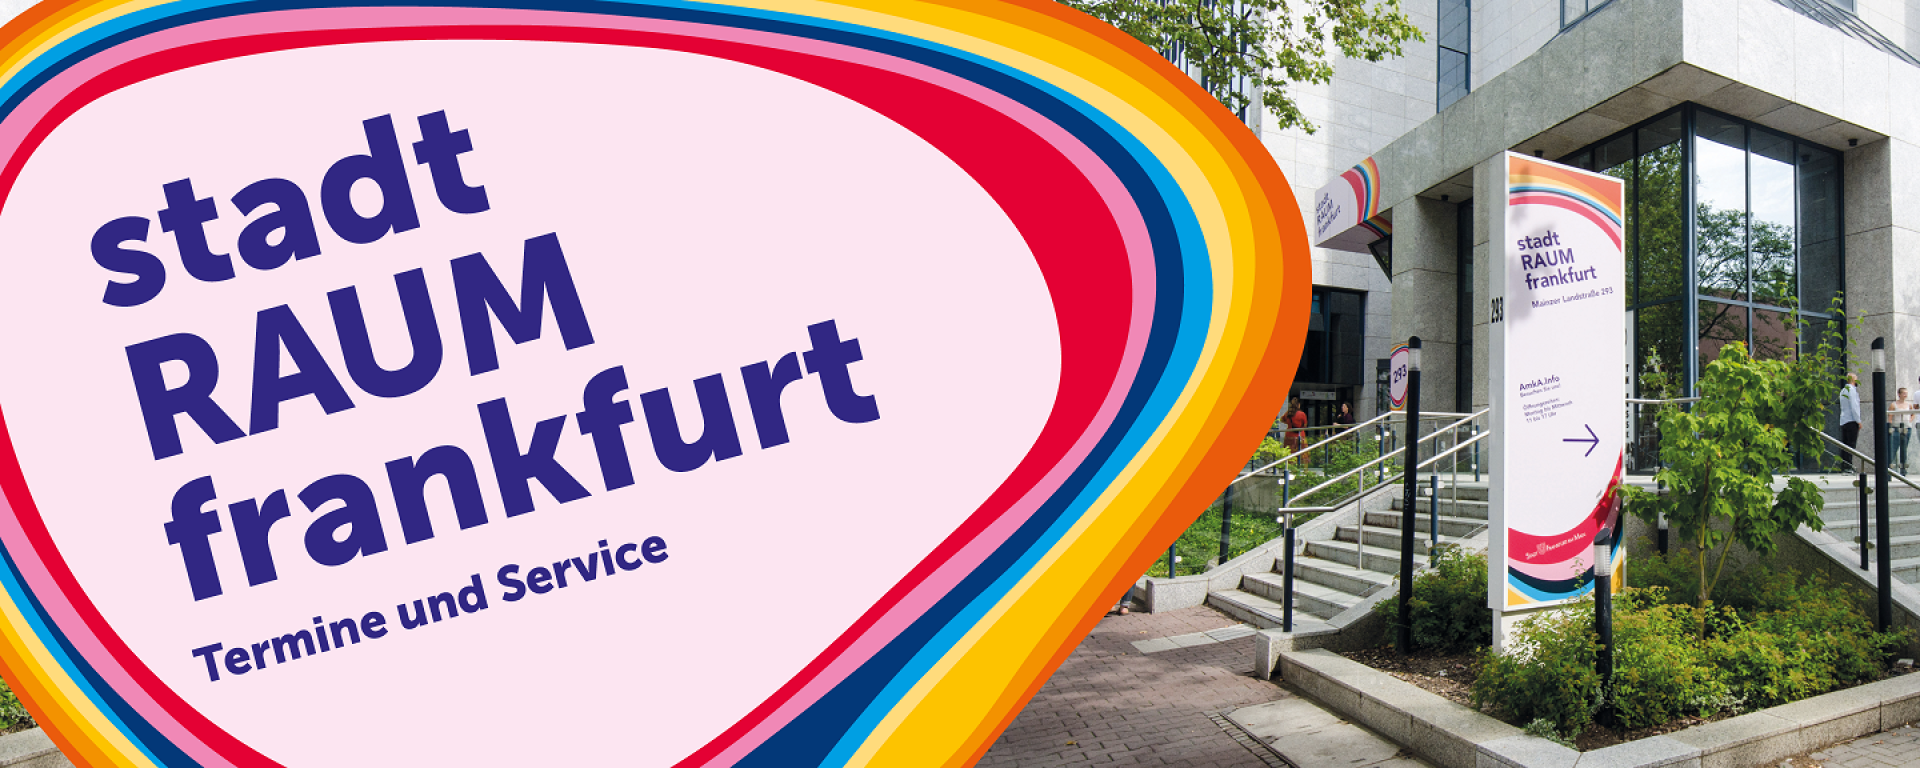 Eine breite Treppe führt zum Eingang des stadtRAUMfrankfurt. Links im Bild ist das Logo des stadtRAUMfrankfurt mit dem Zusatz "Termine und Service"